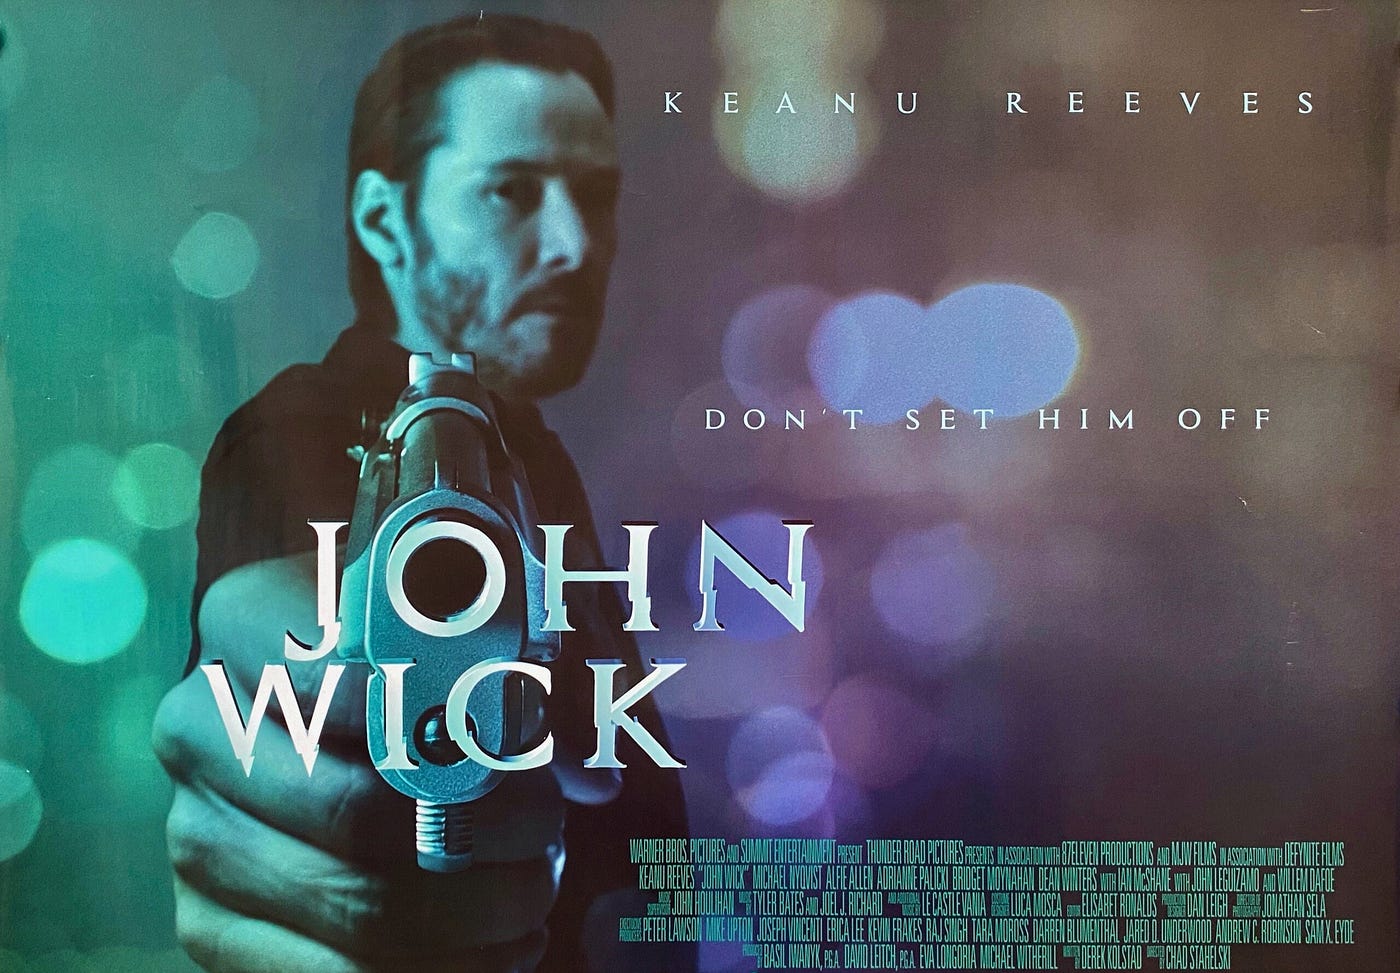 John Wick (2014) – The Queens of Geekdom